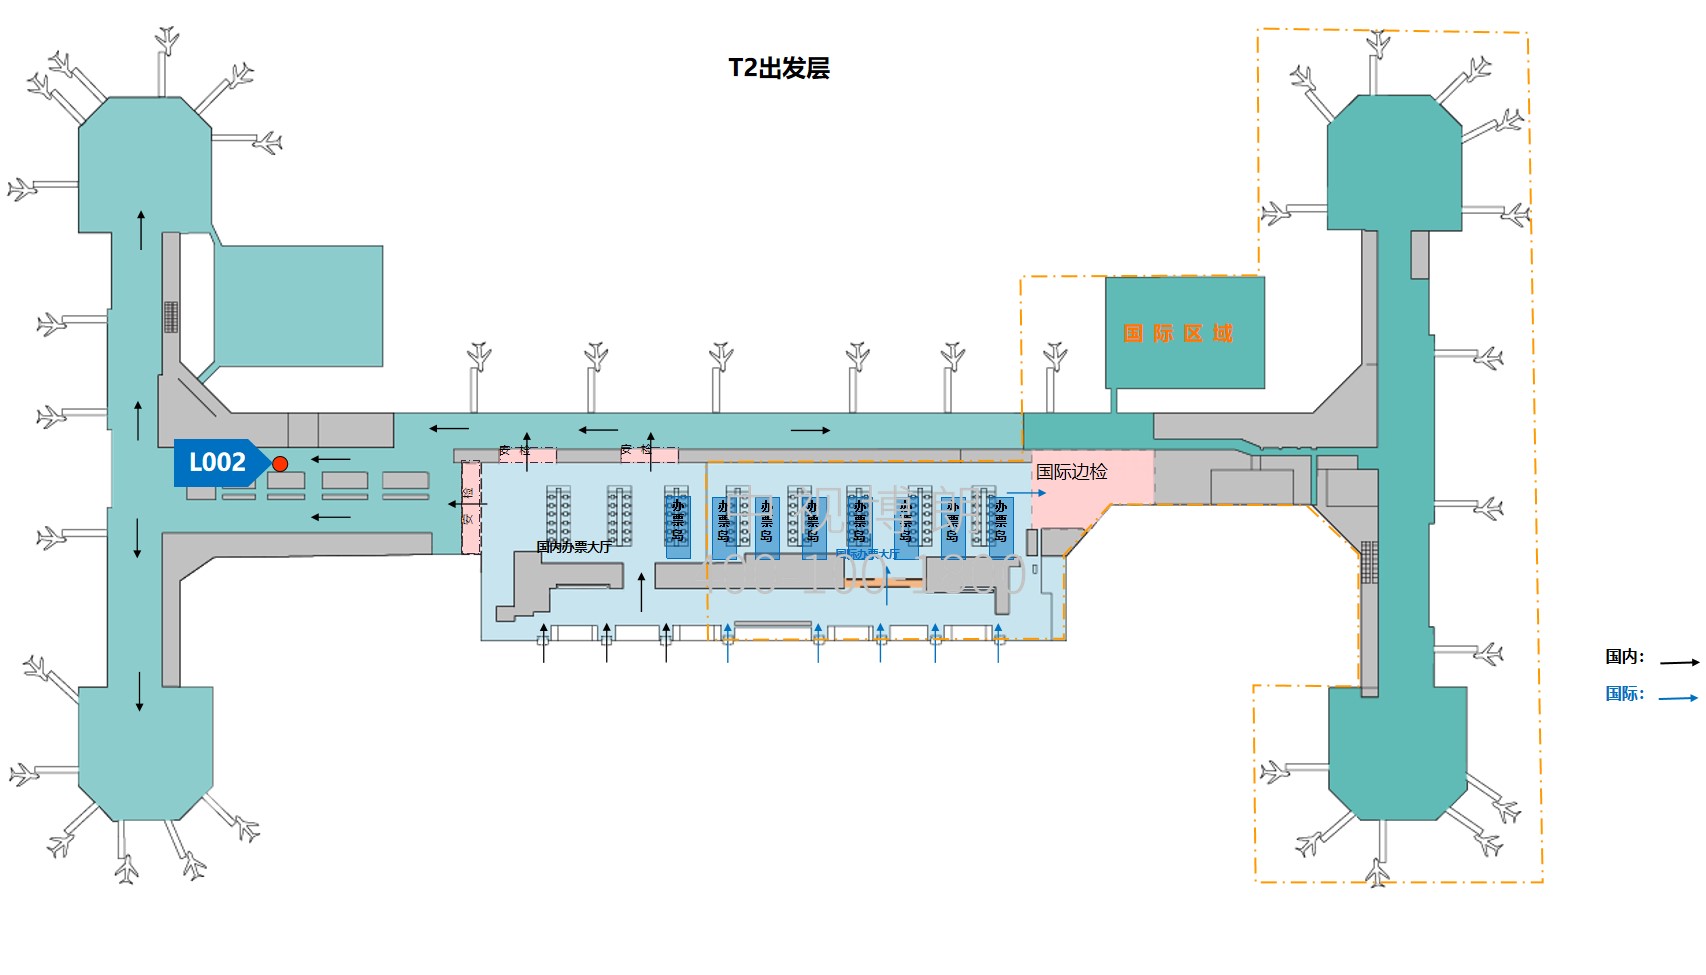 北京首都机场广告-T2 Domestic Departure Corridor Screen L002位置图